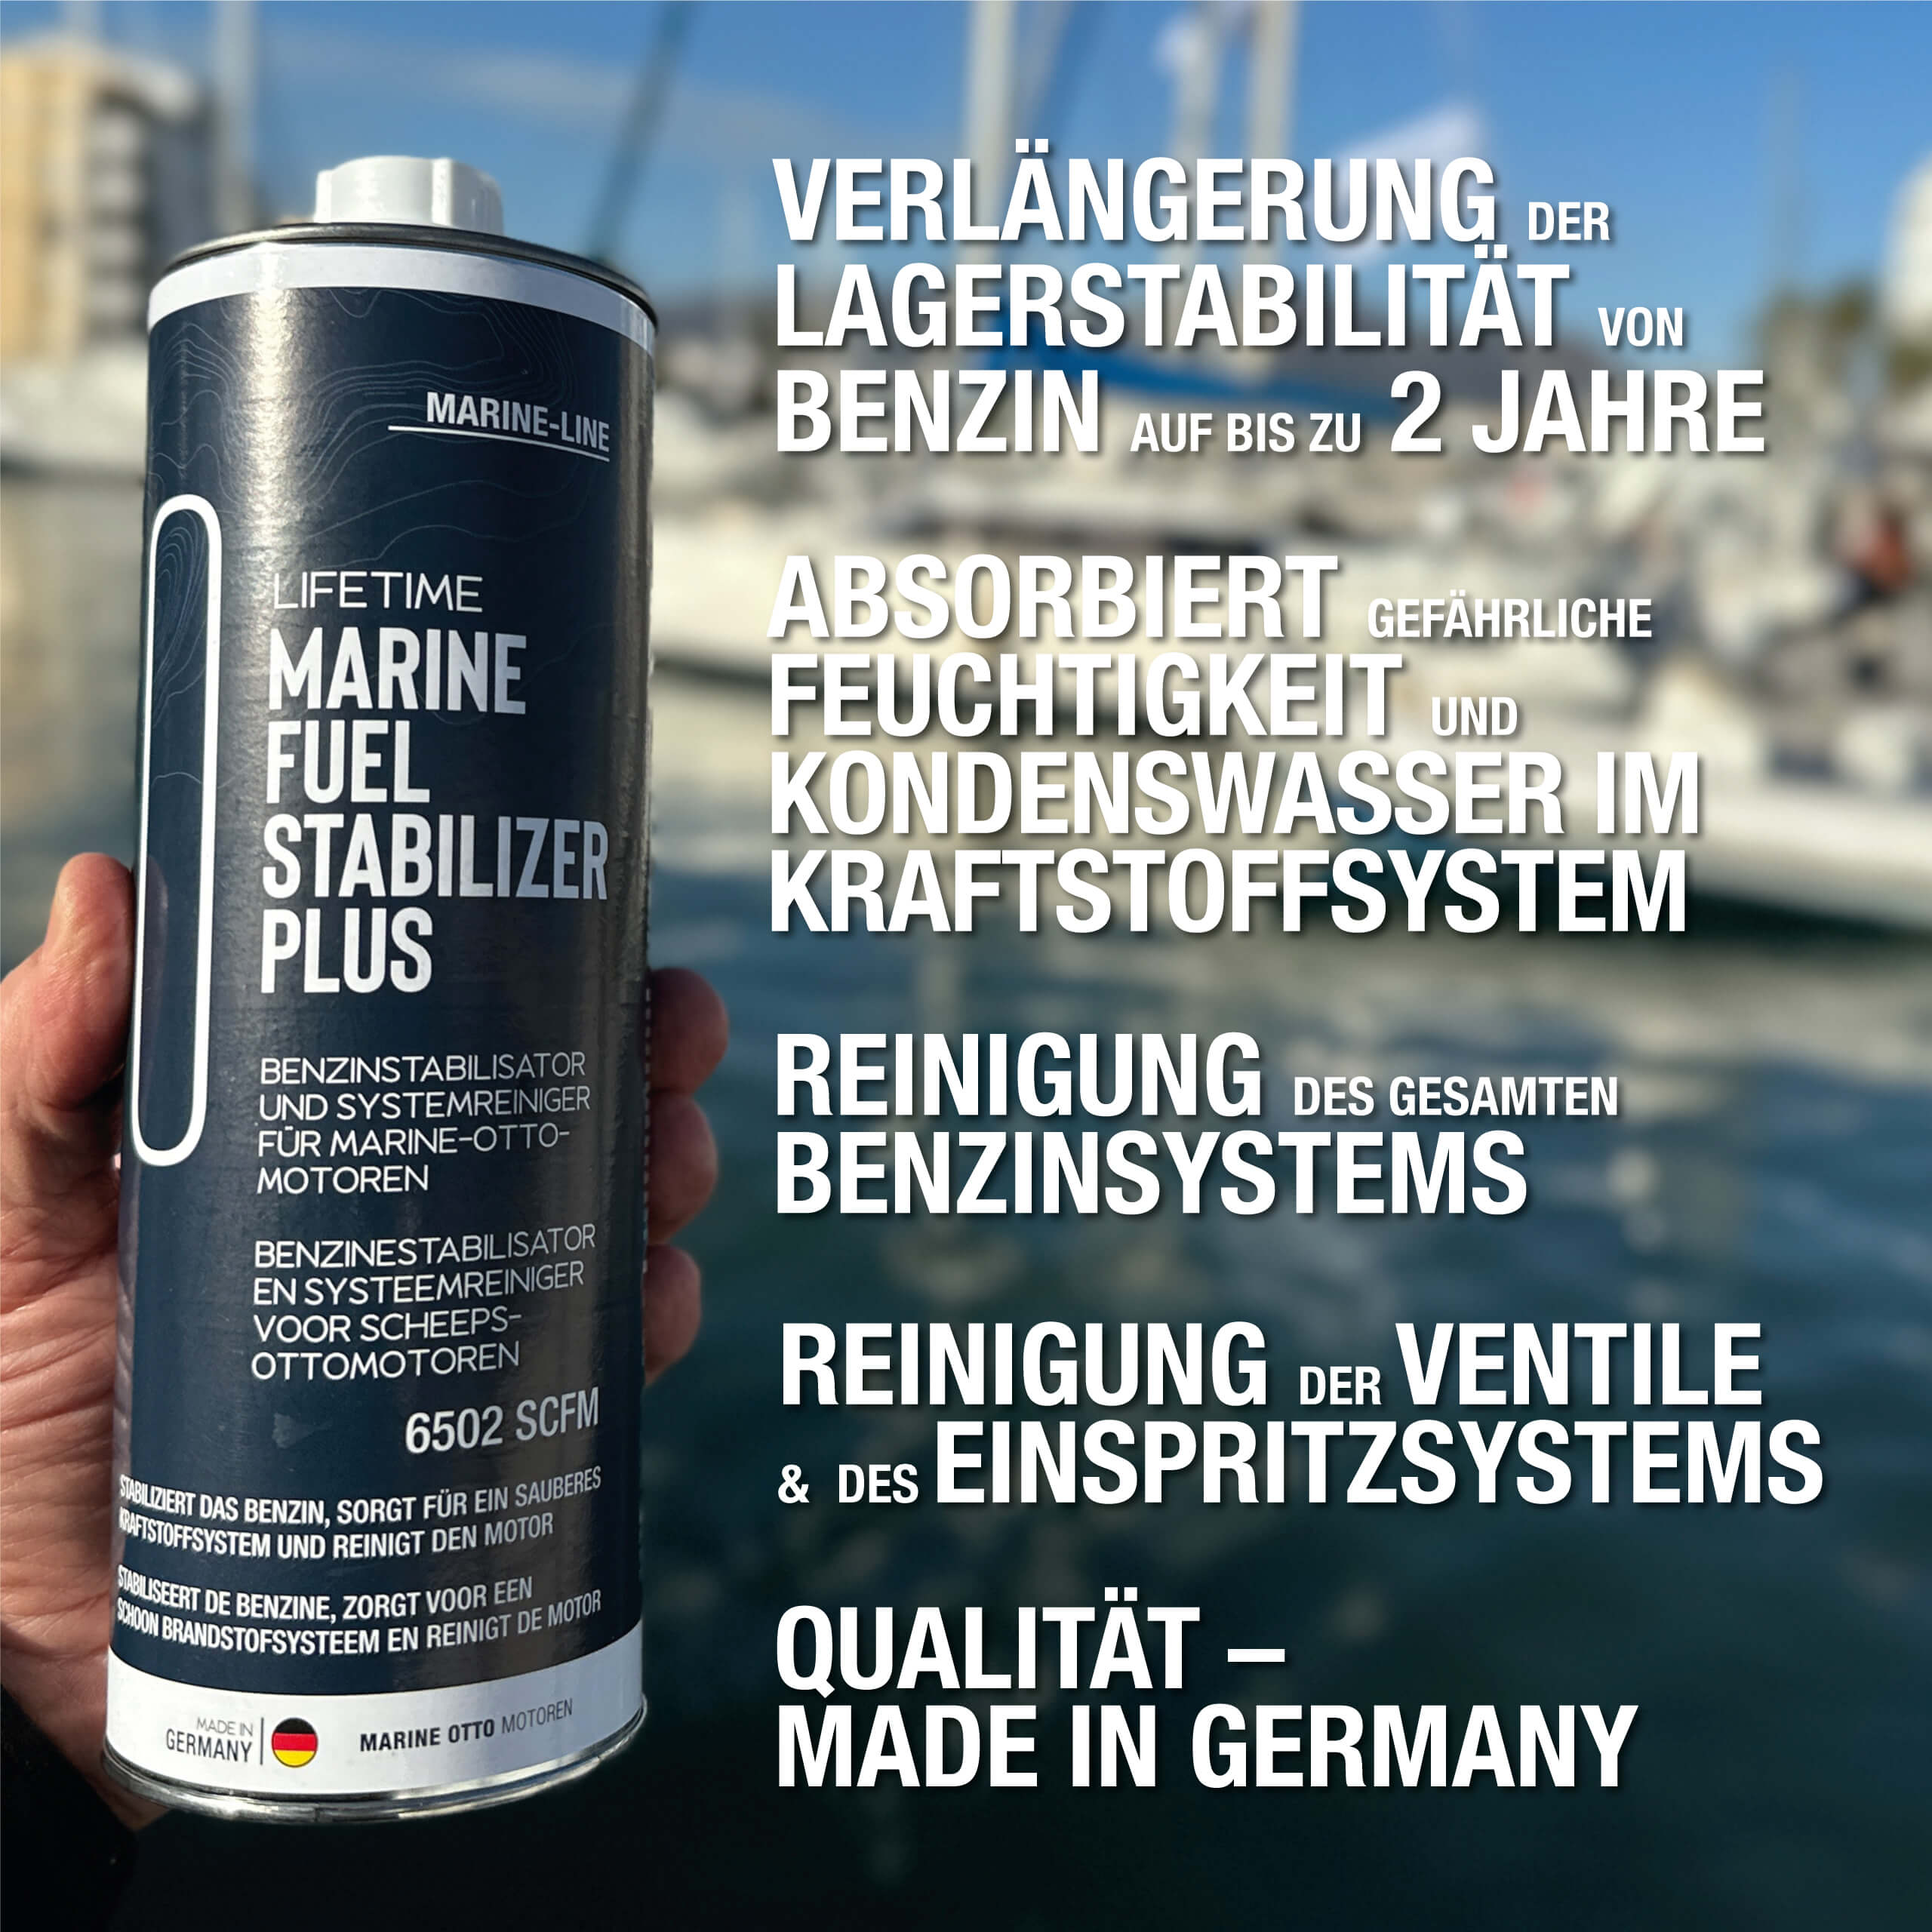 Eine Männerhand hält eine Dose Lifetime Marine Fuel Stabilizer Plus. Yachthafen im Hintergrund. Bild-Beschriftung mit fünf Produktvorteilen.